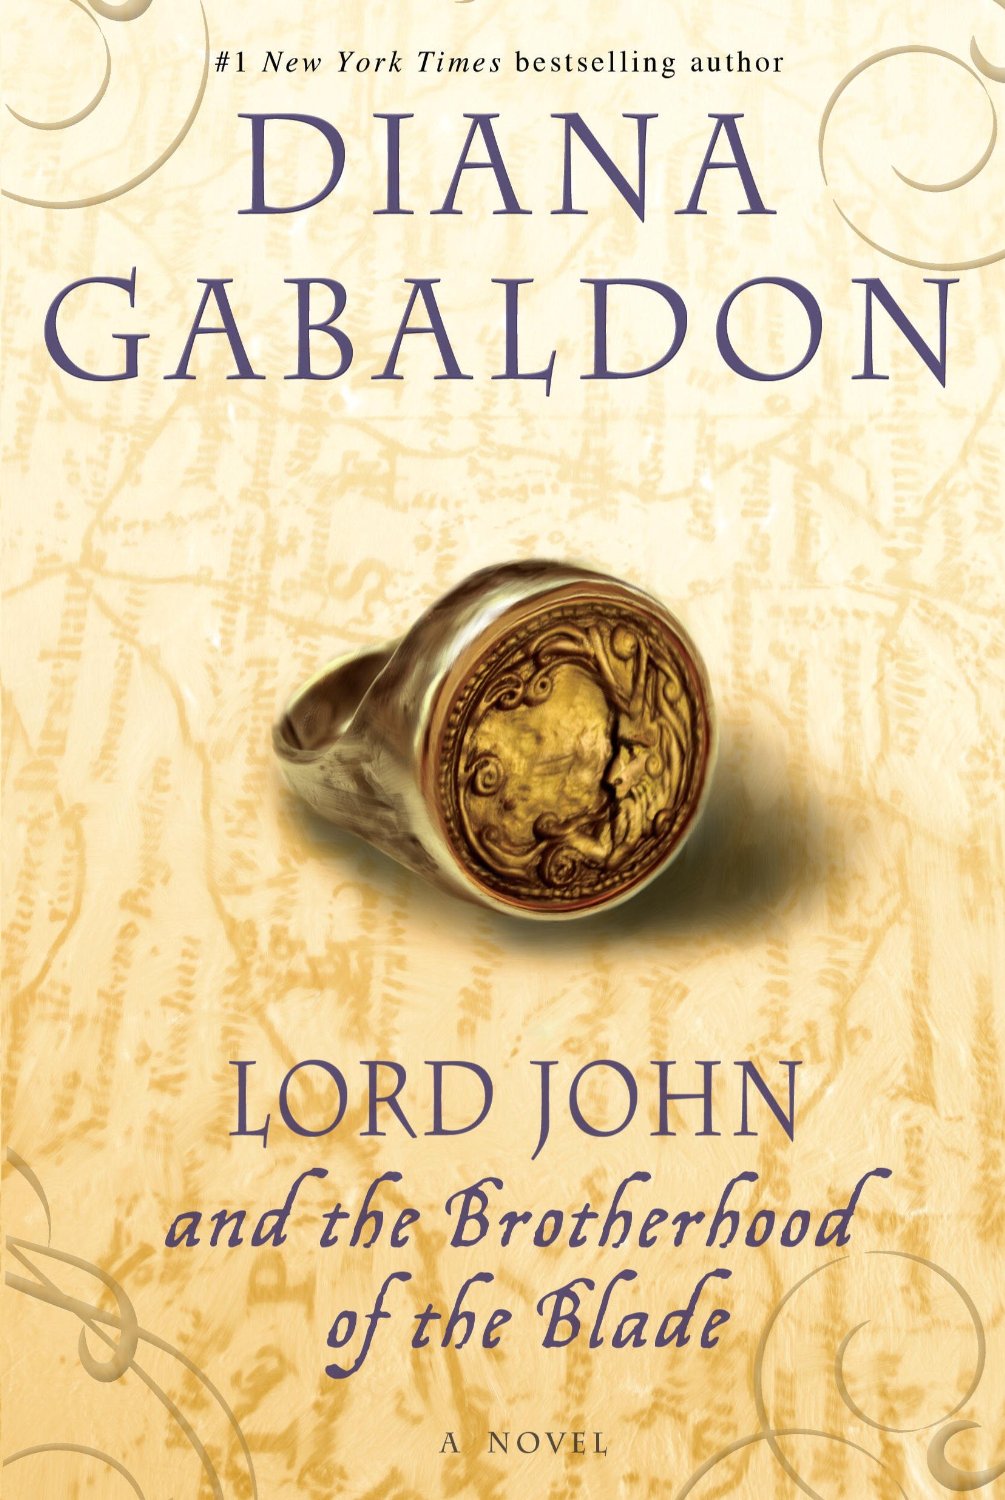 Lord-John-Brotherhood-Blade